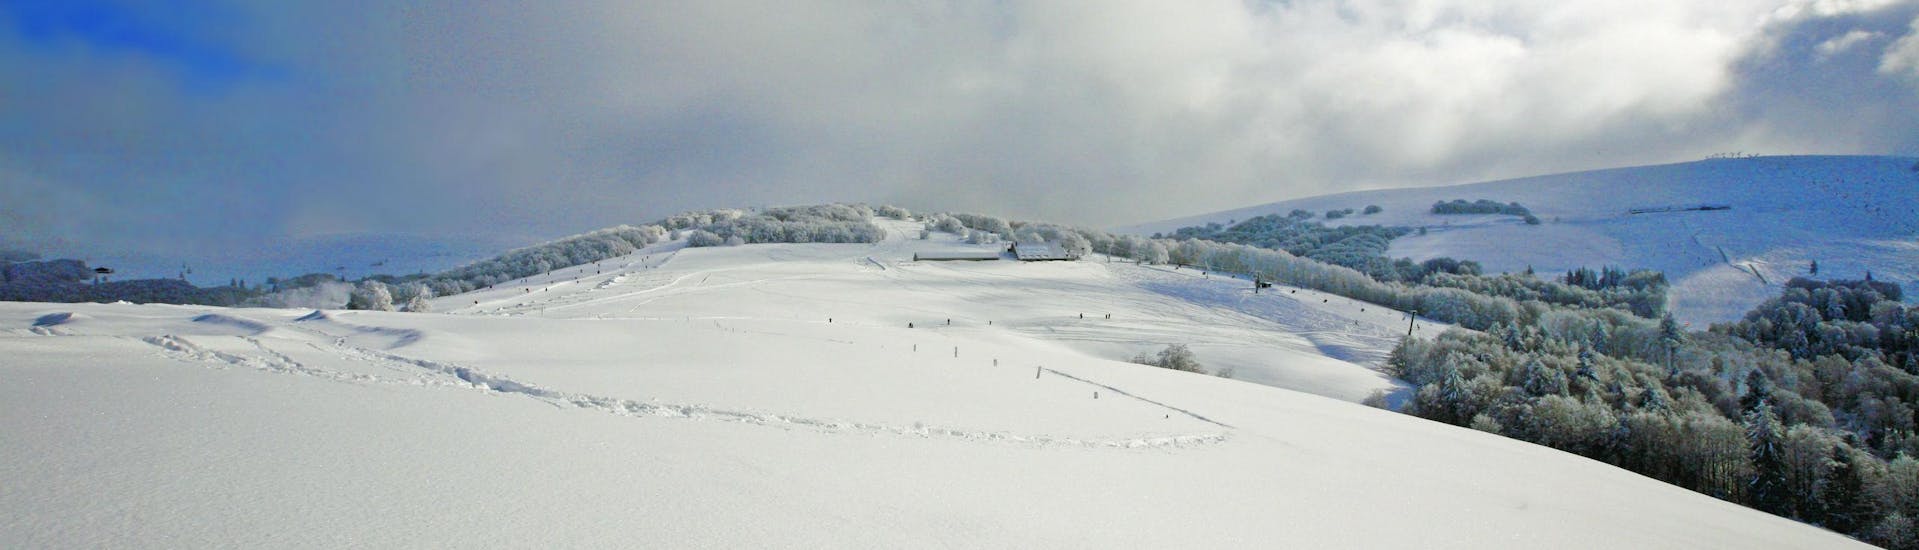 Une image des collines maintenant couverte de neige de la station de ski de La Bresse, où l'école de ski locale offre une sélection diverse de cours de ski.